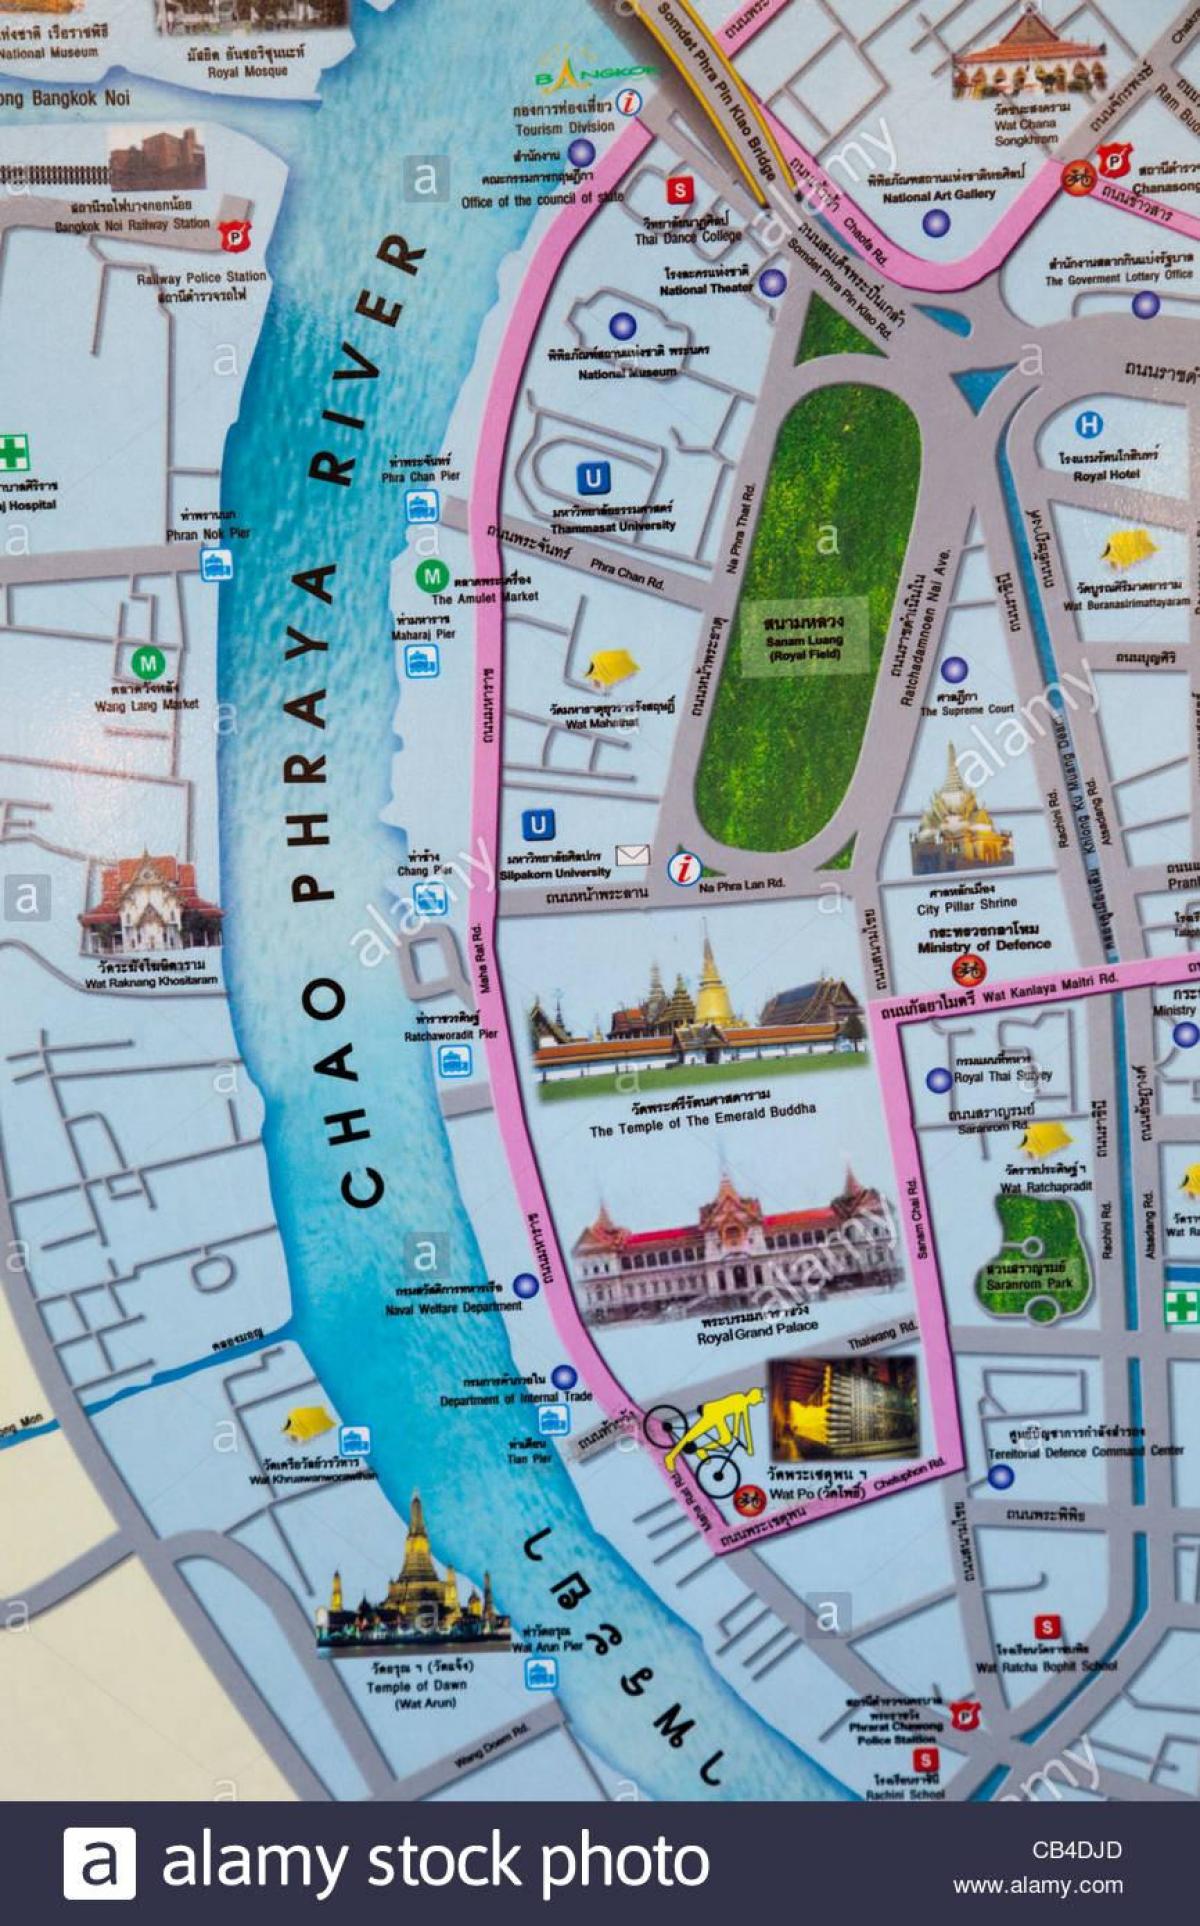 μπανγκόκ χάρτη με τουριστικά σημεία